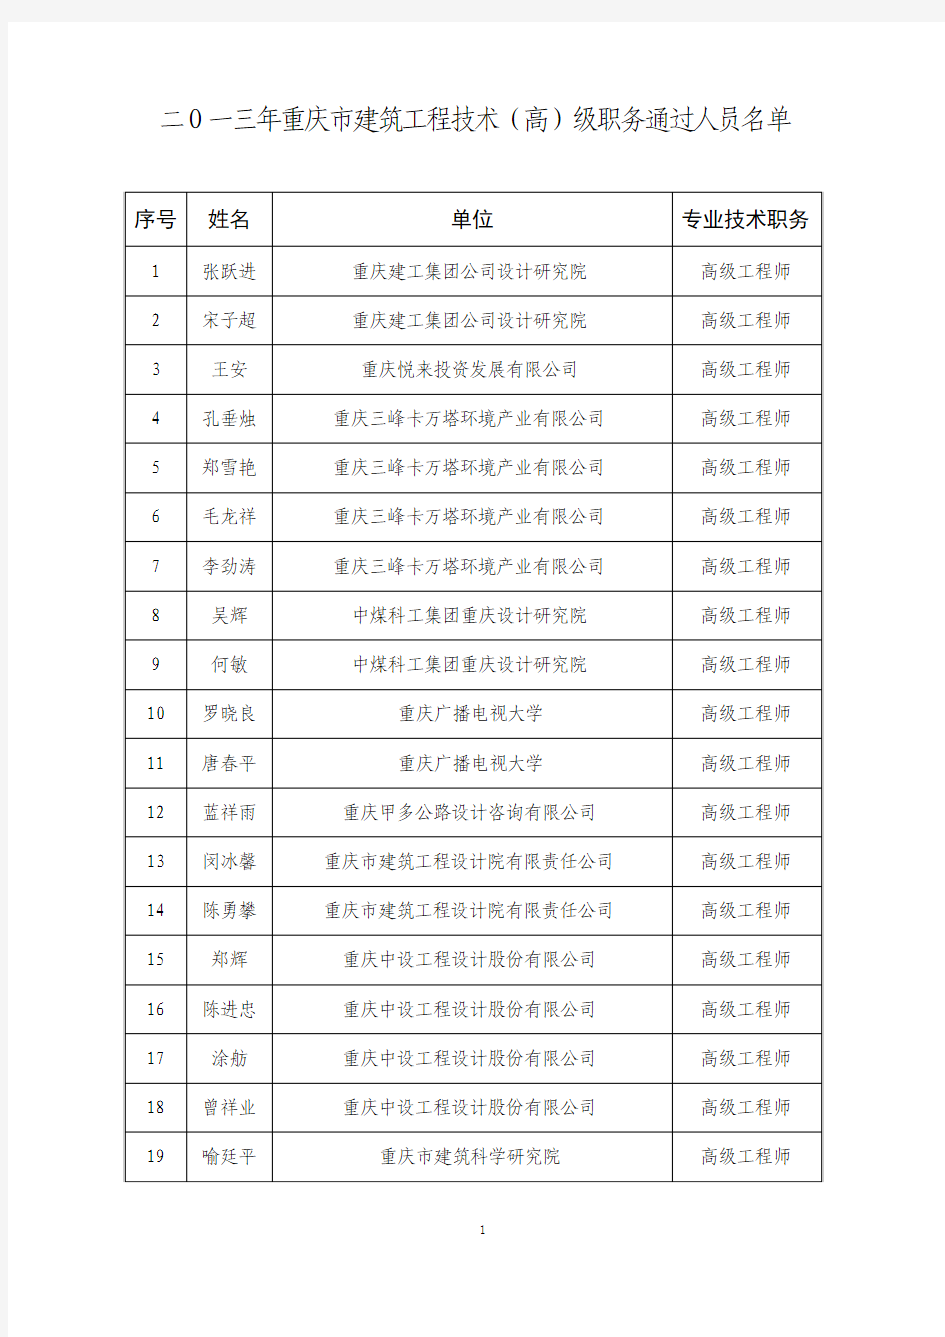 二O一三年重庆市建筑工程技术(高)级职务通过人员名单